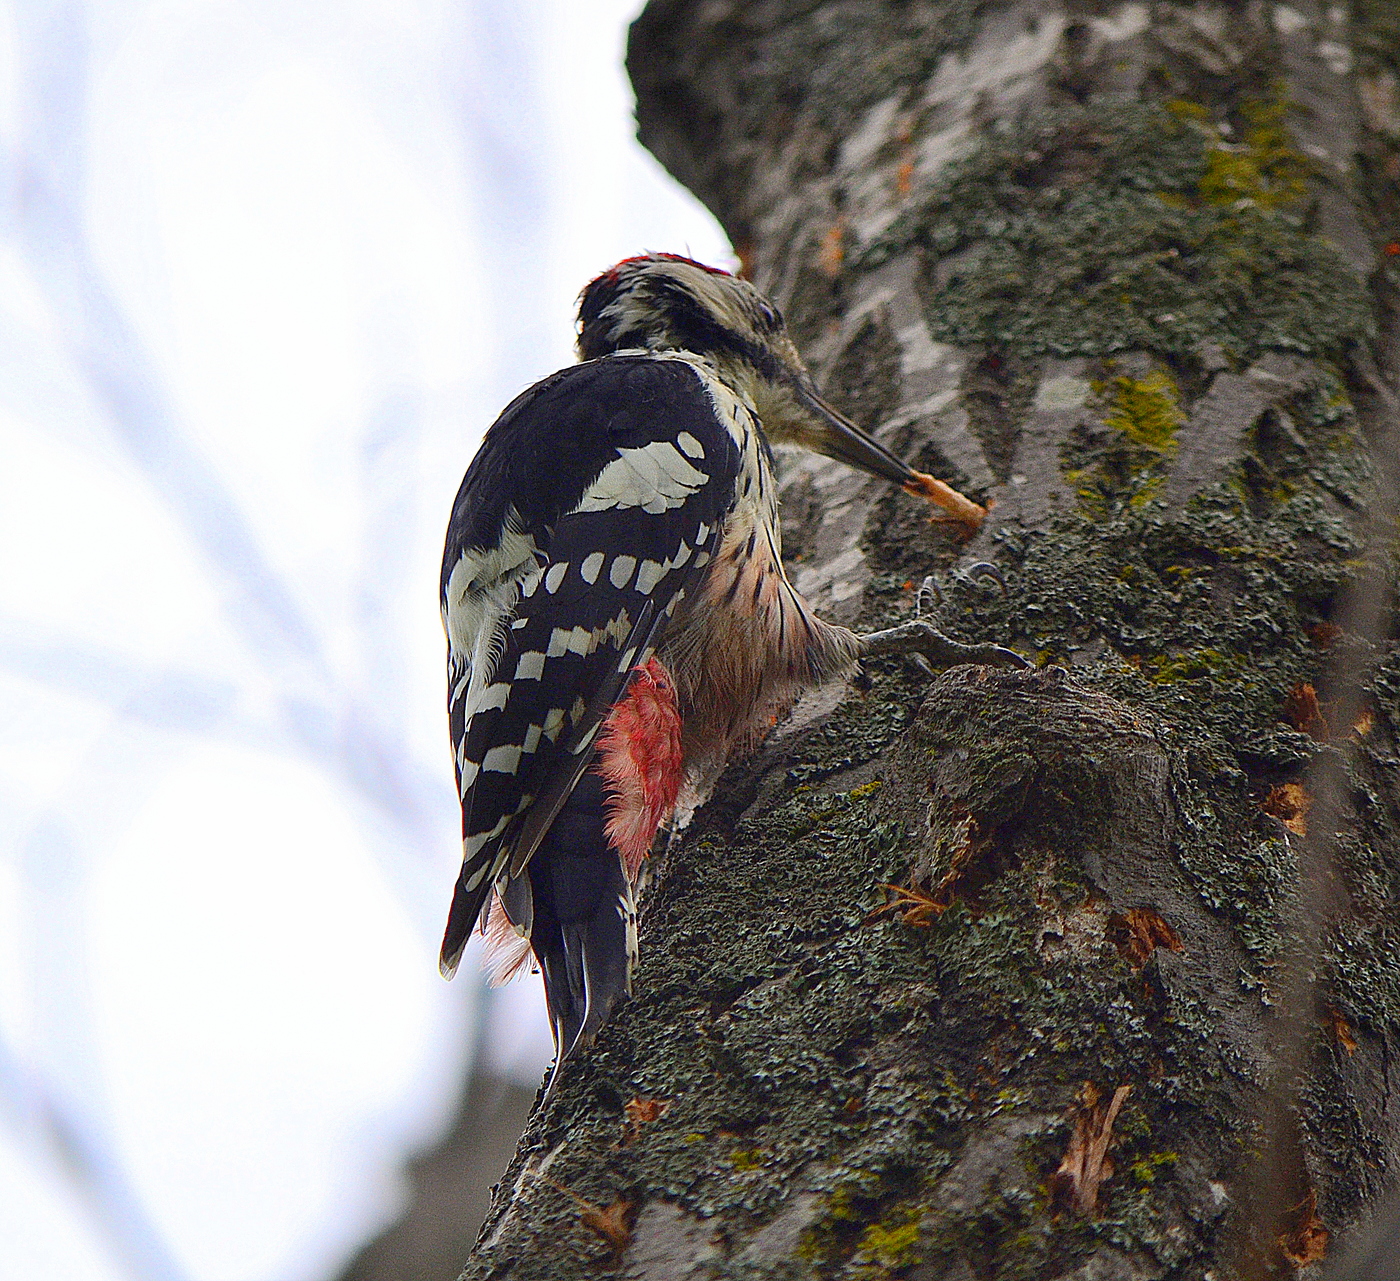 Woodpecker nrog prey